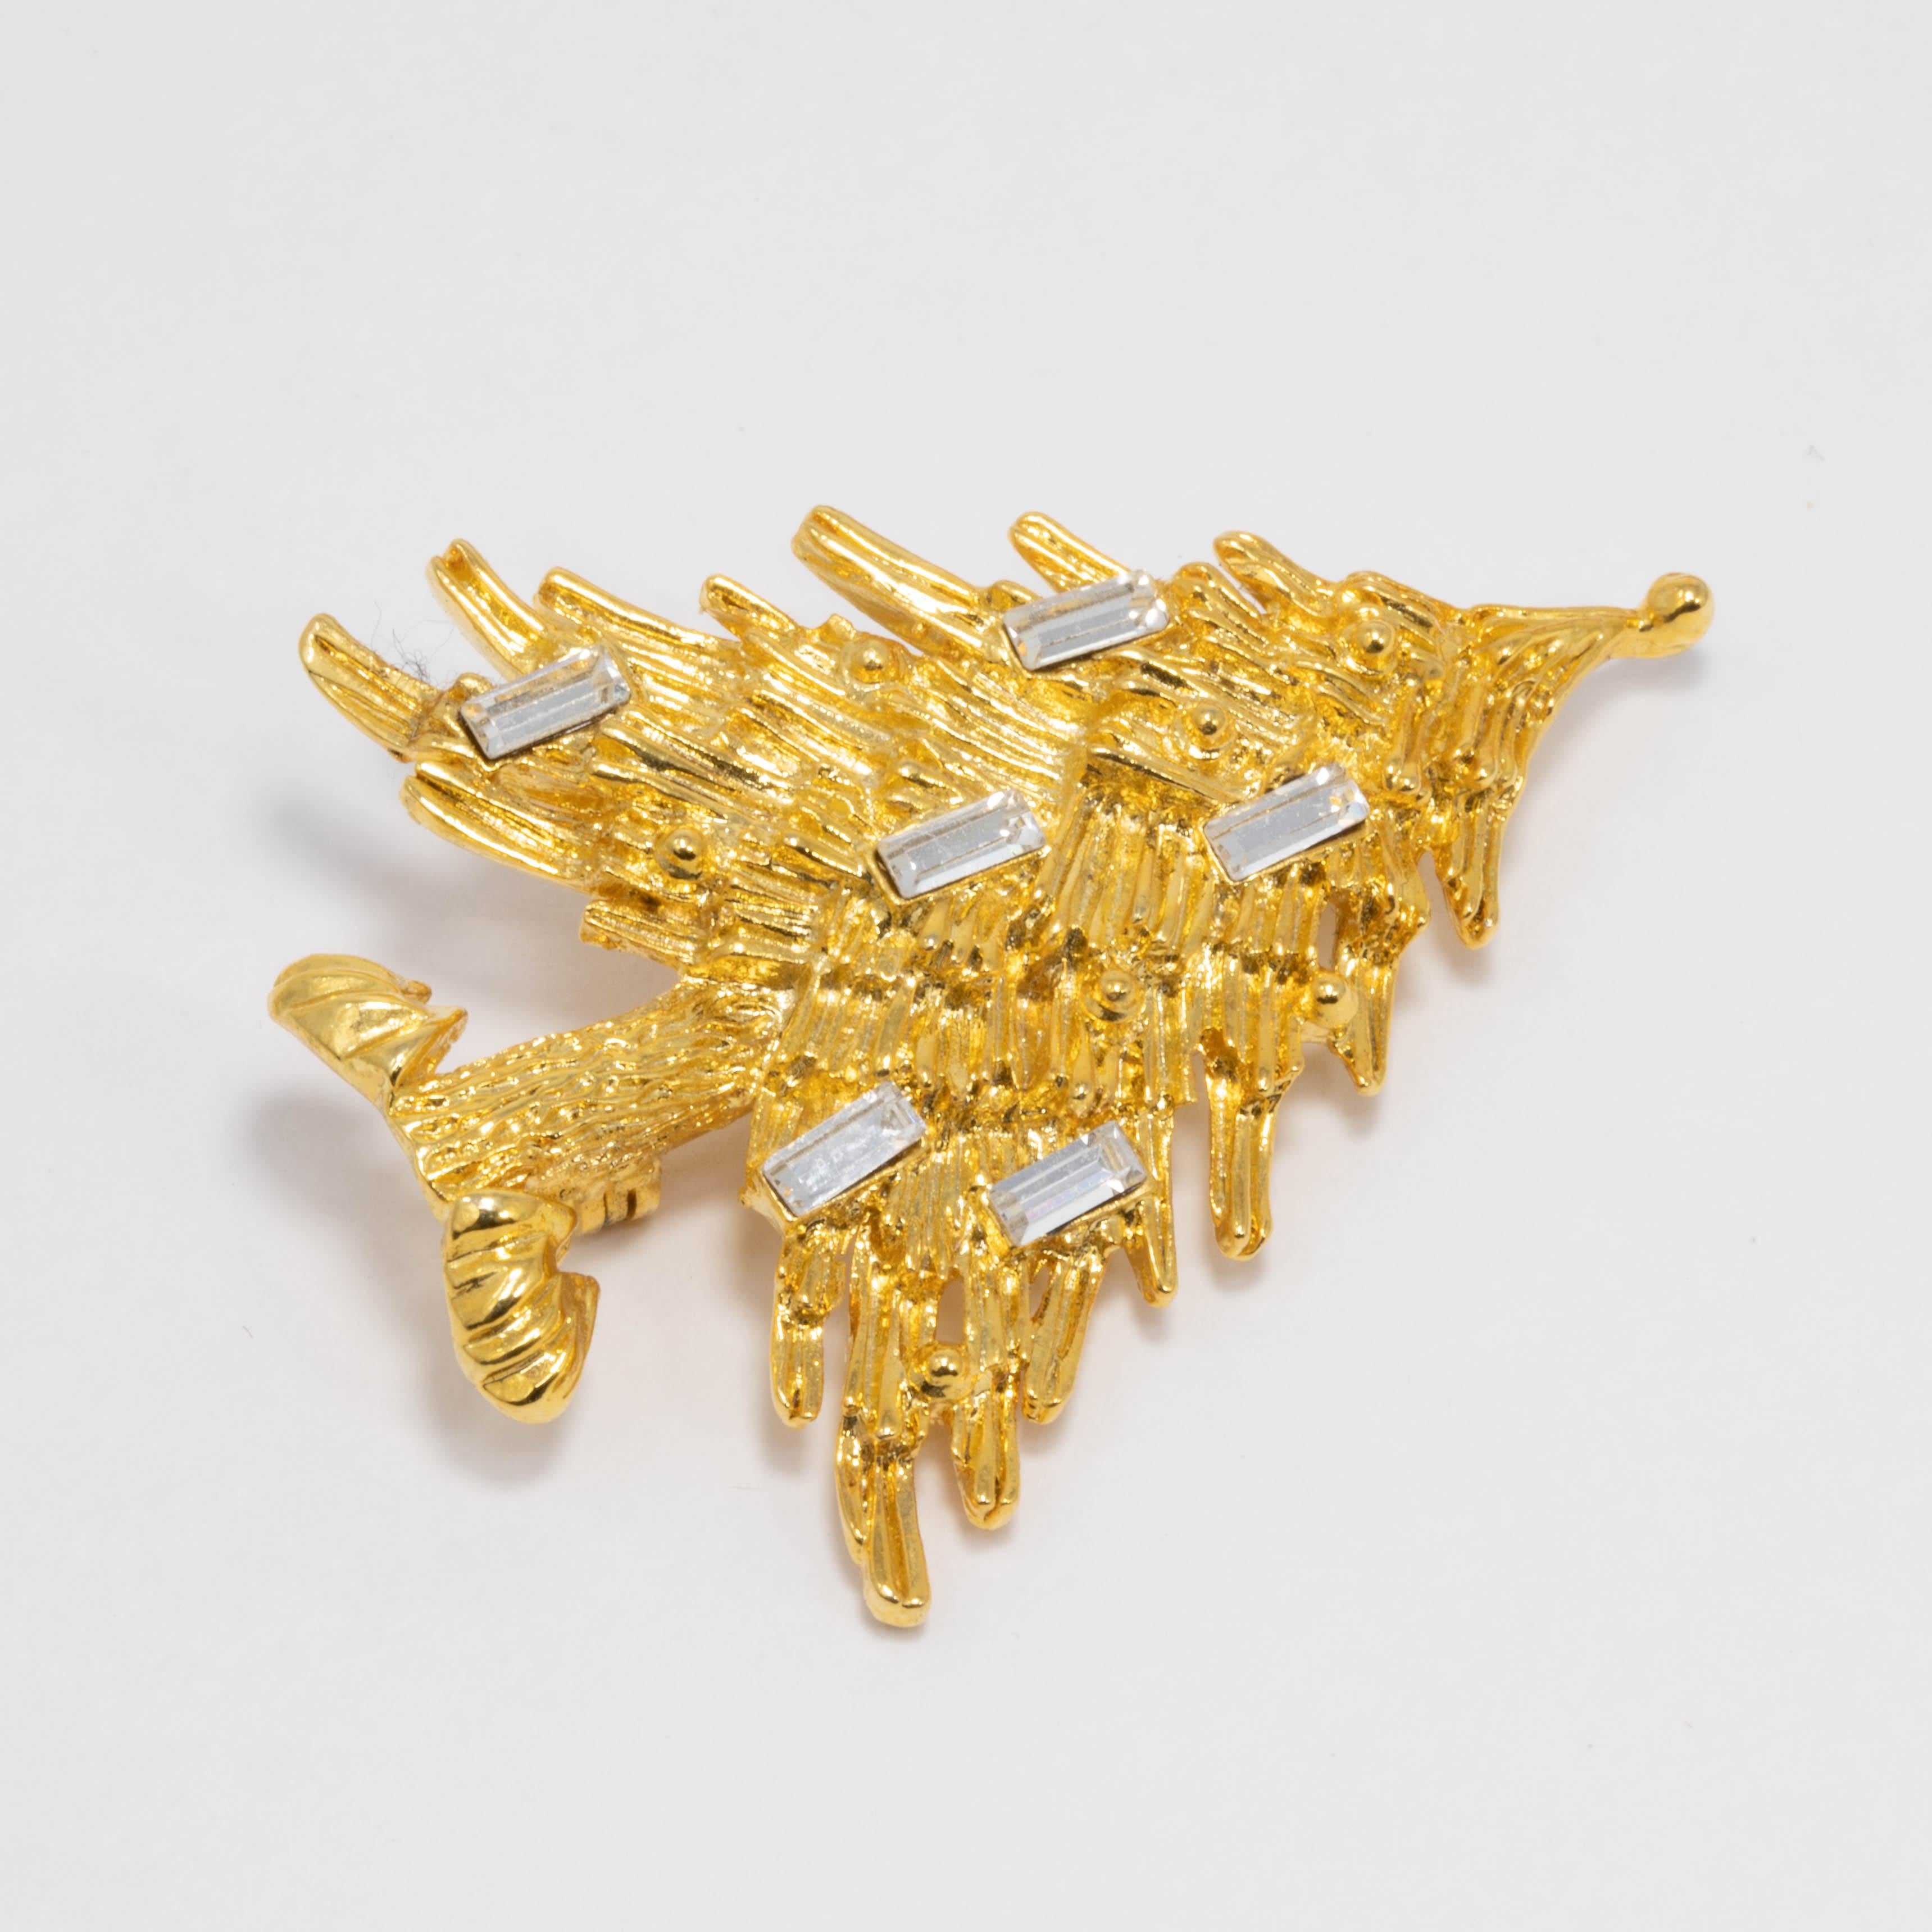 Broche en forme de sapin de Noël, représentant un sapin doré texturé et décoré de cristaux clairs taillés en baguette.

Plaqué or.

Tags, Marques, Poinçons : © LIA, Made in USA